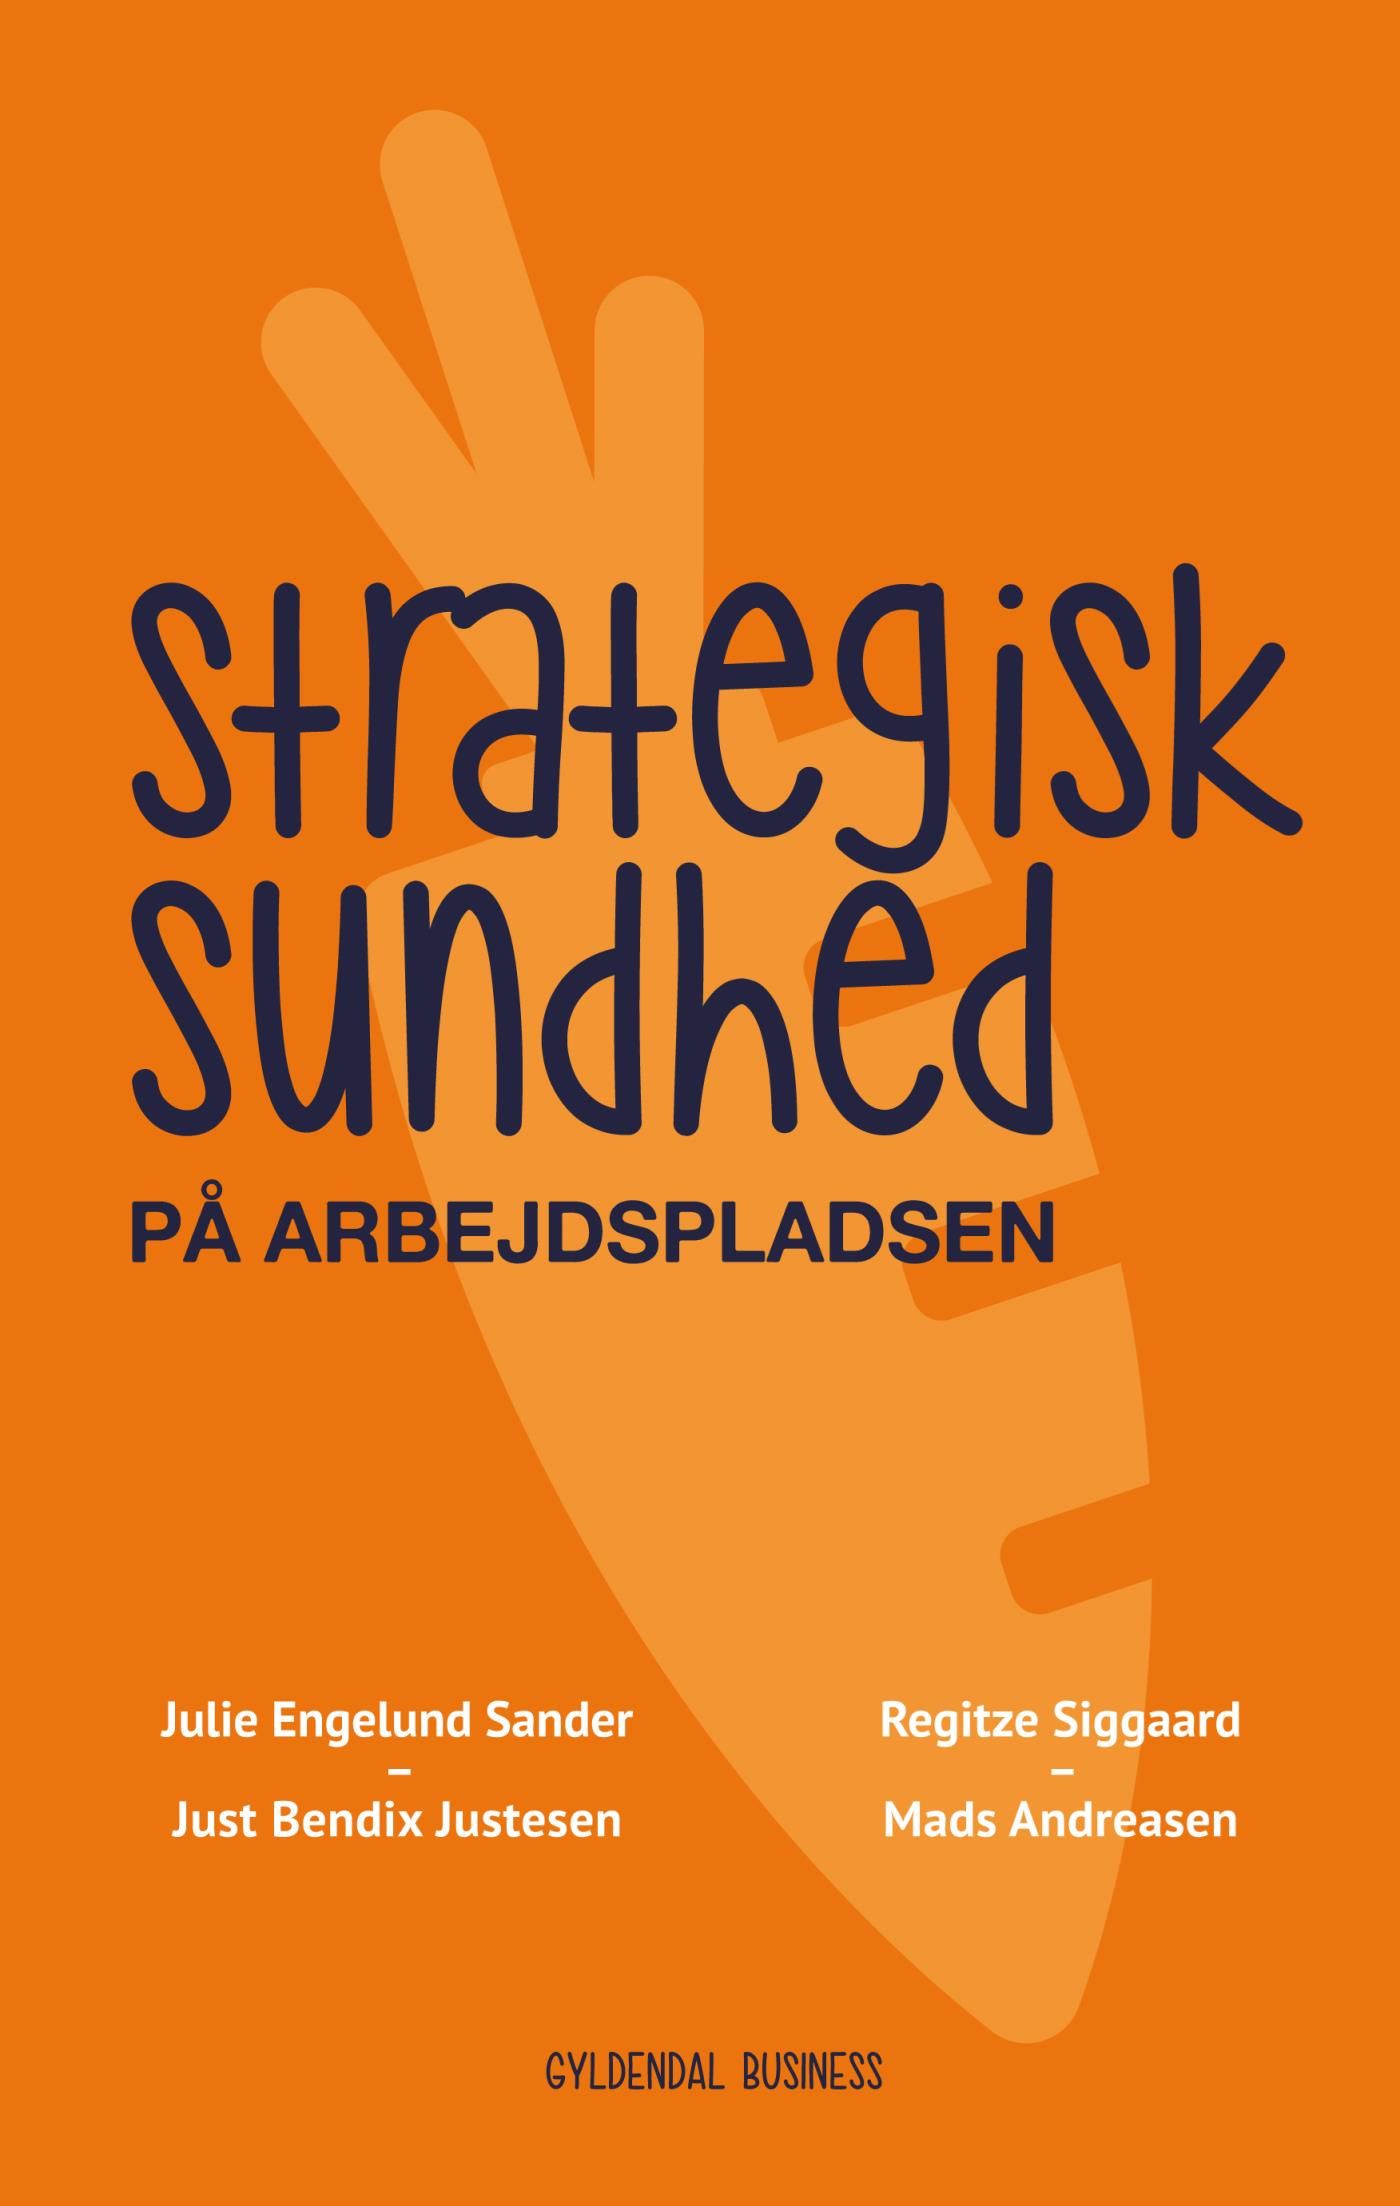 Strategisk sundhed på arbejdspladsen, e-bok av Mads Andreasen, Just Bendix Justesen, Julie Engelund Sander, Regitze Siggaard